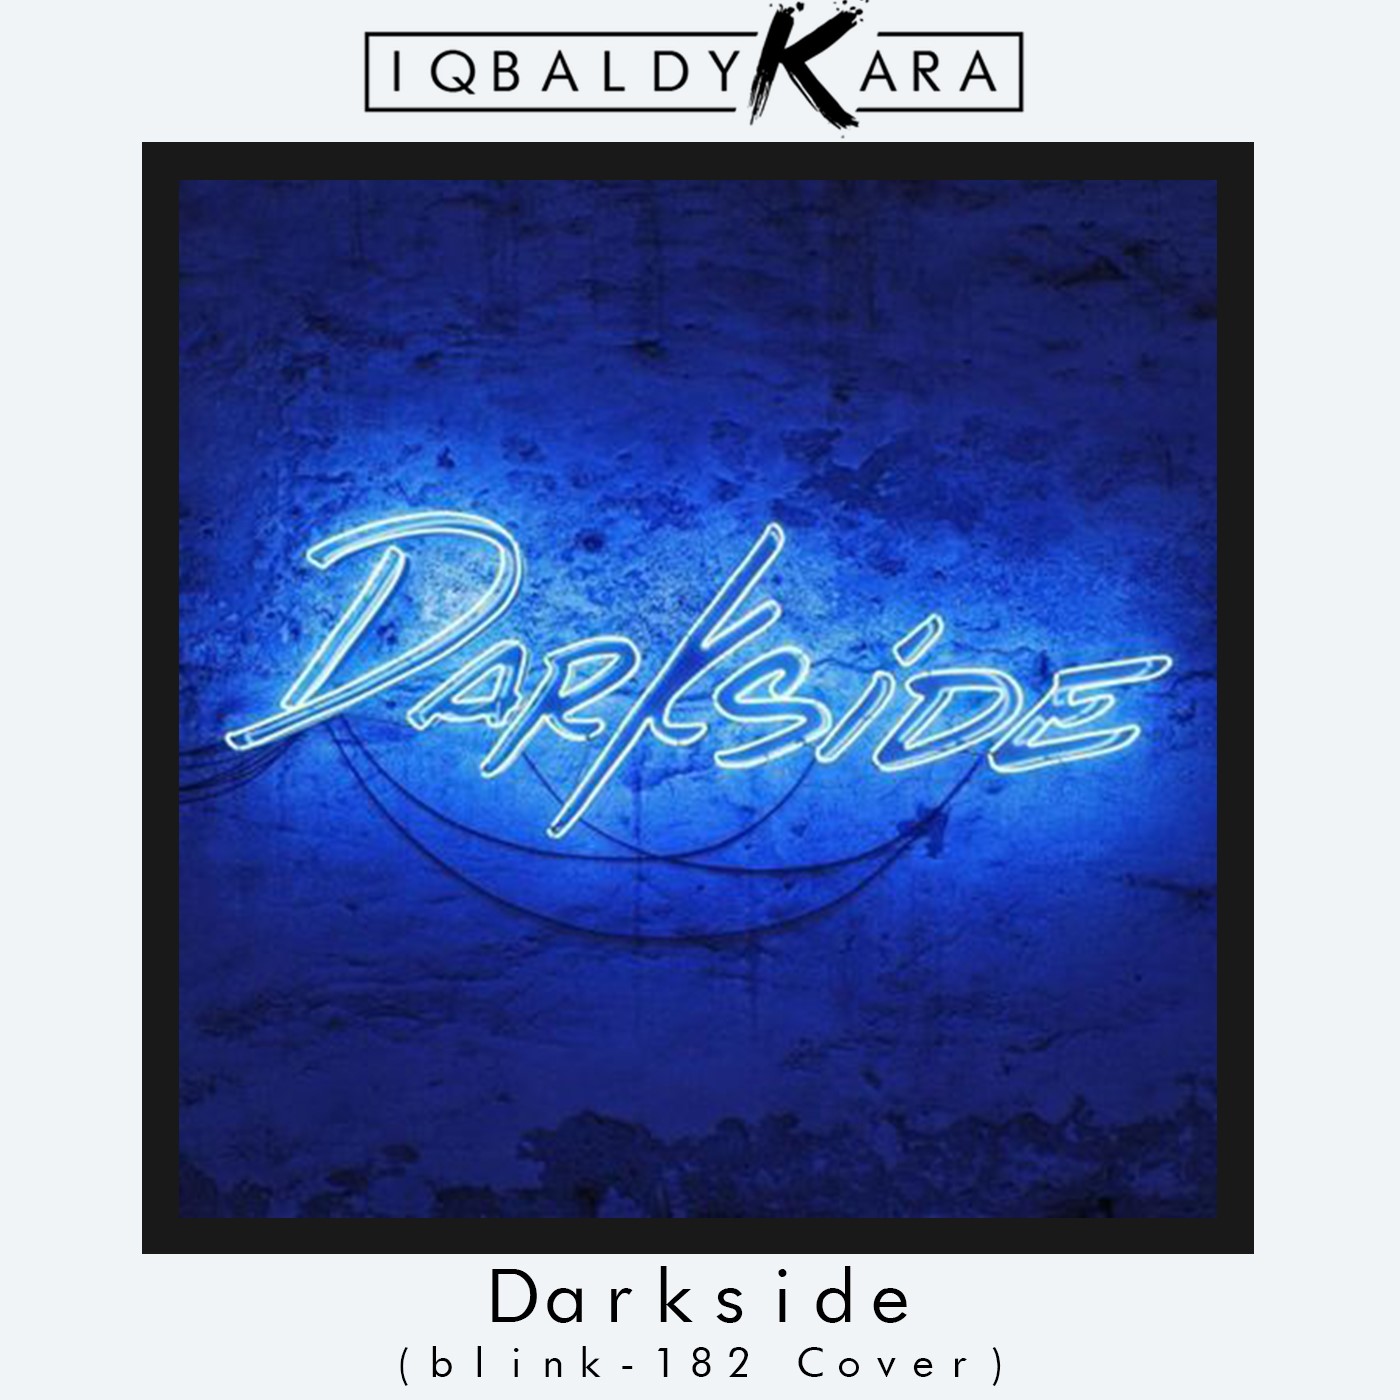 Download Darkside (blink-182 Cover)